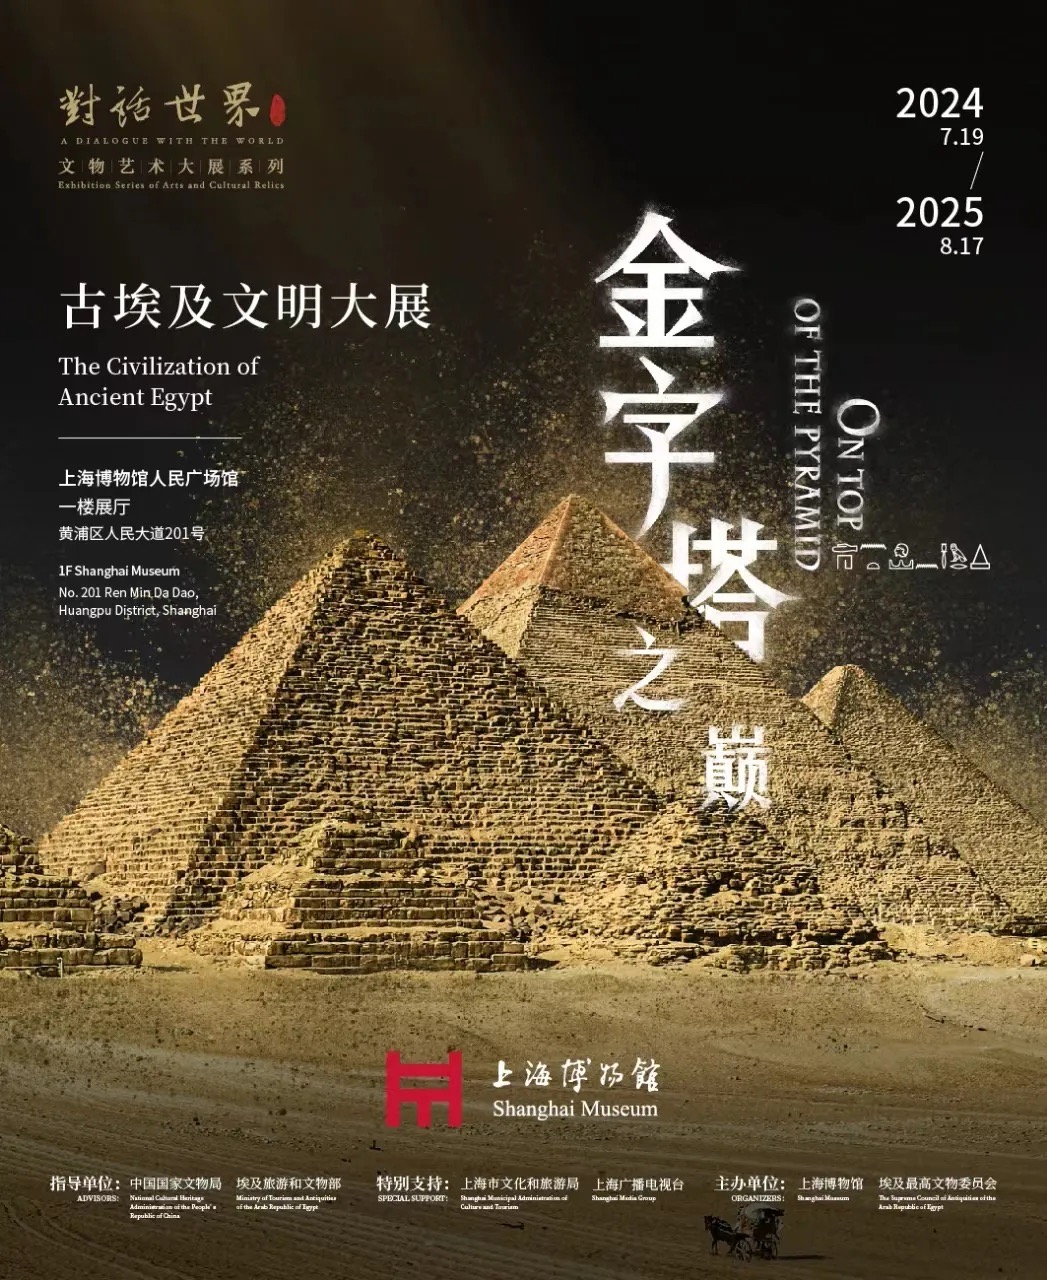 上海博物馆古埃及文明大展将启 超95%文物首次来到亚洲